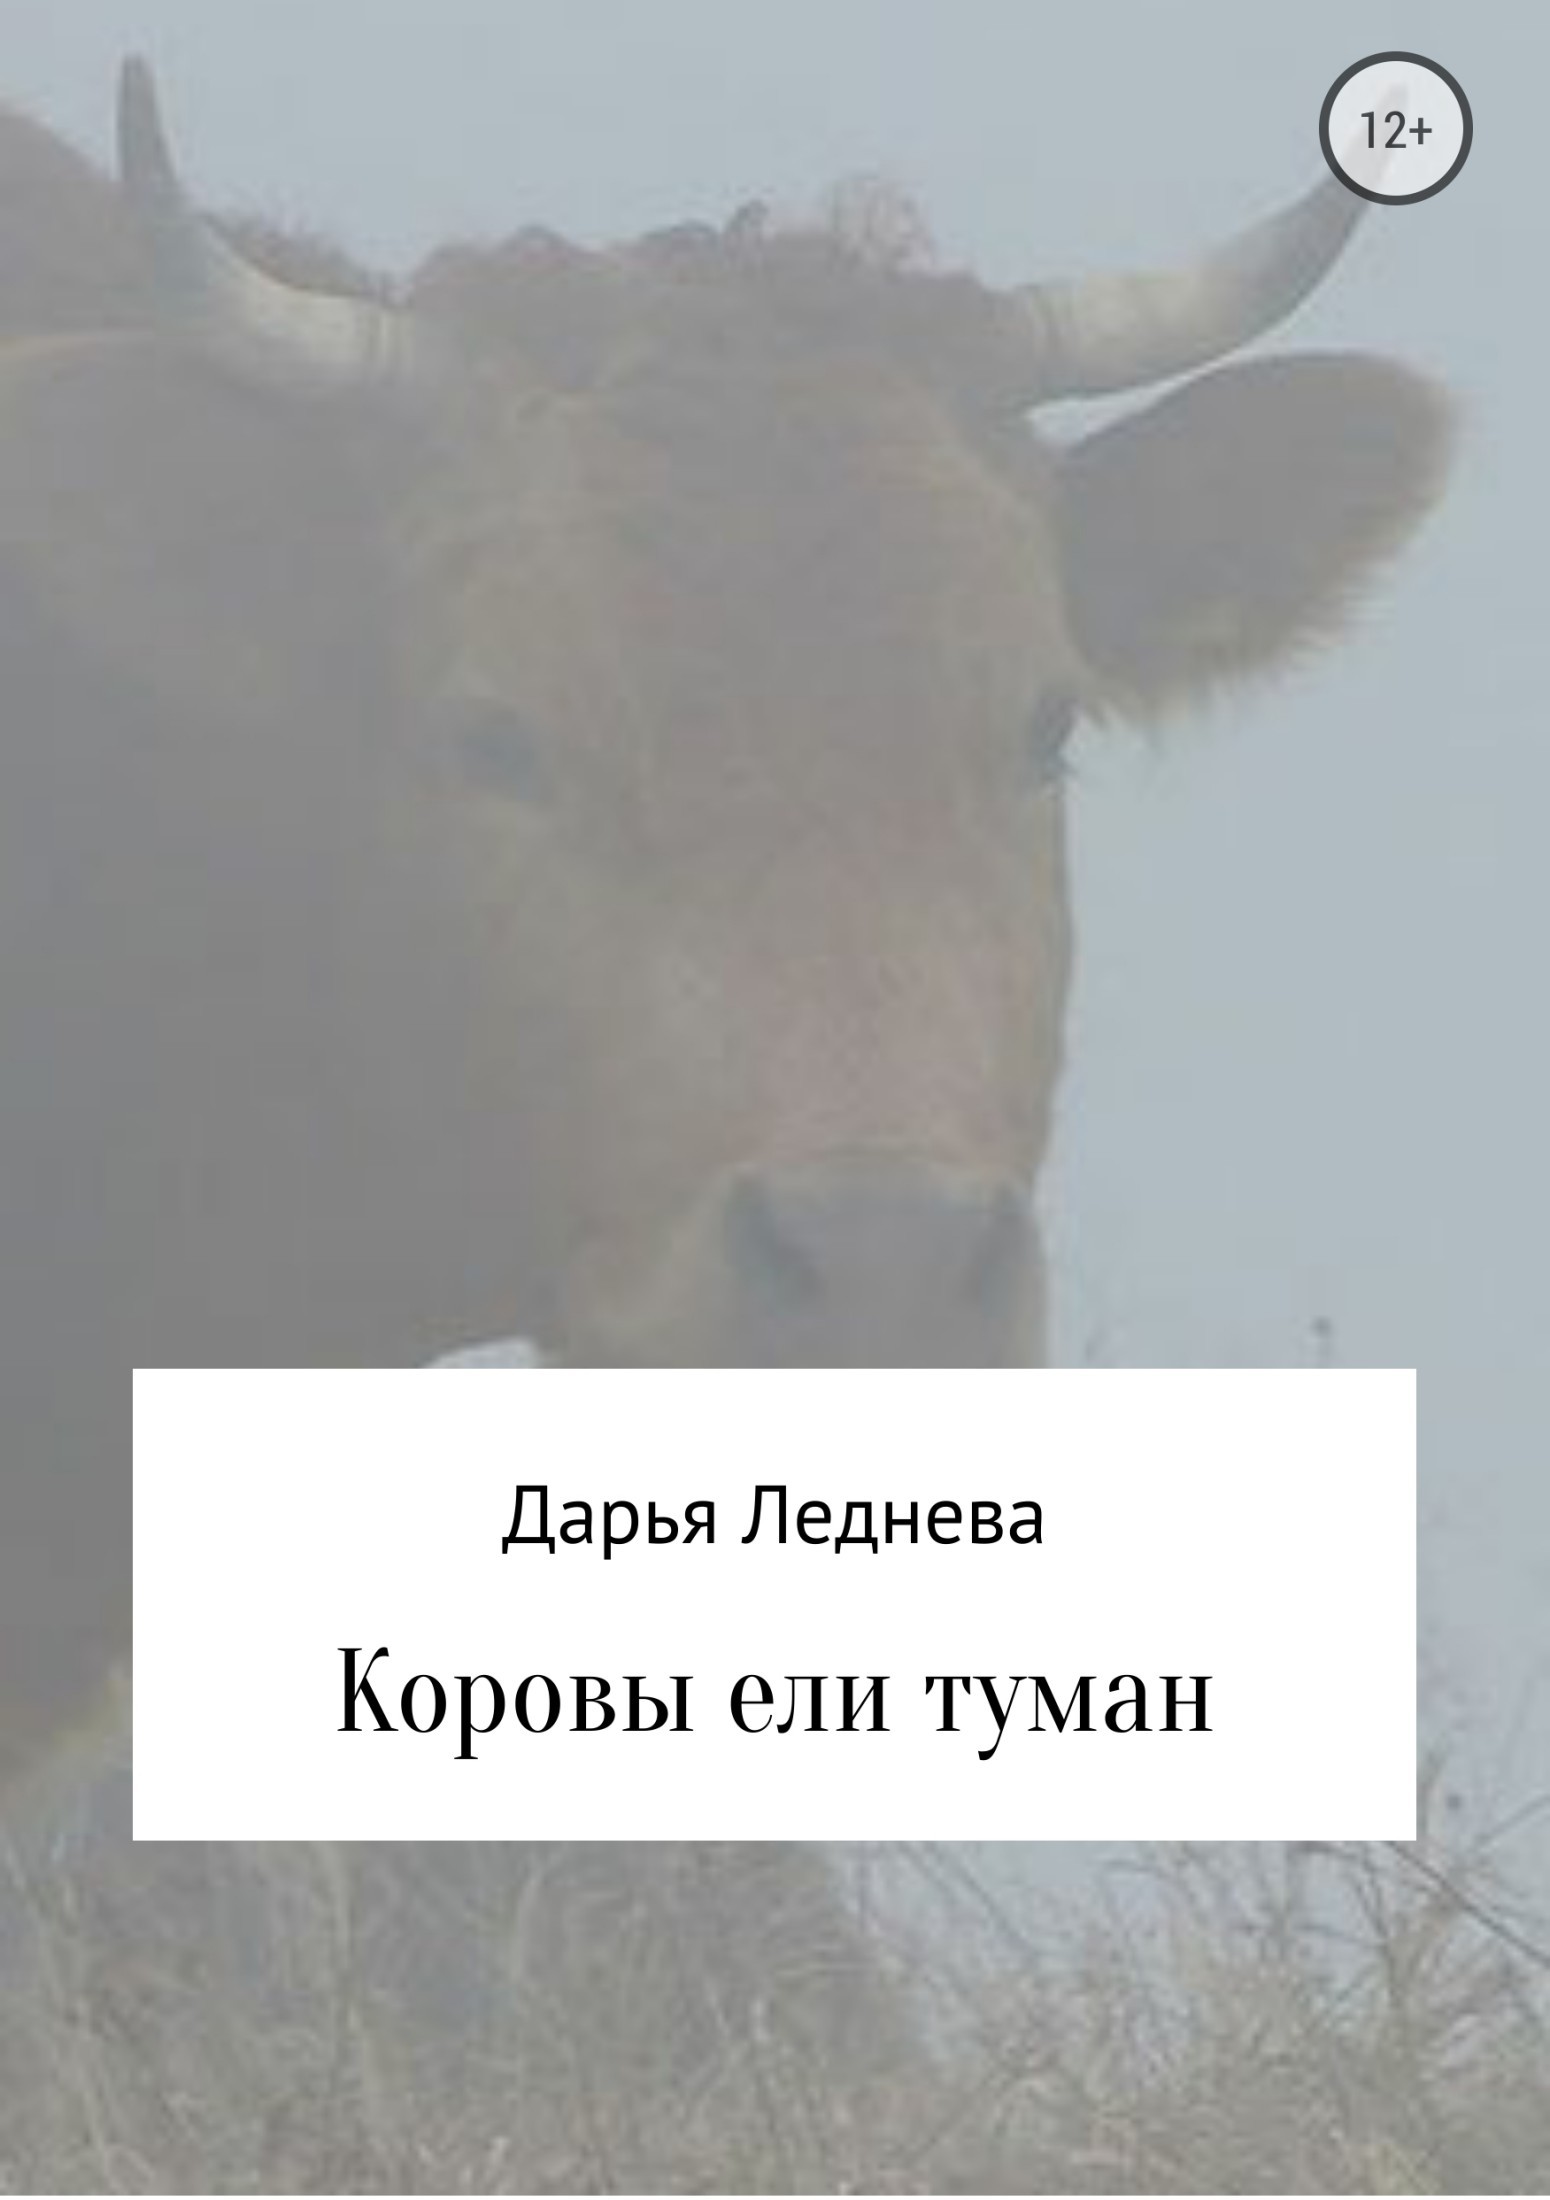 Скачать Коровы ели туман - Дарья Михайловна Леднева